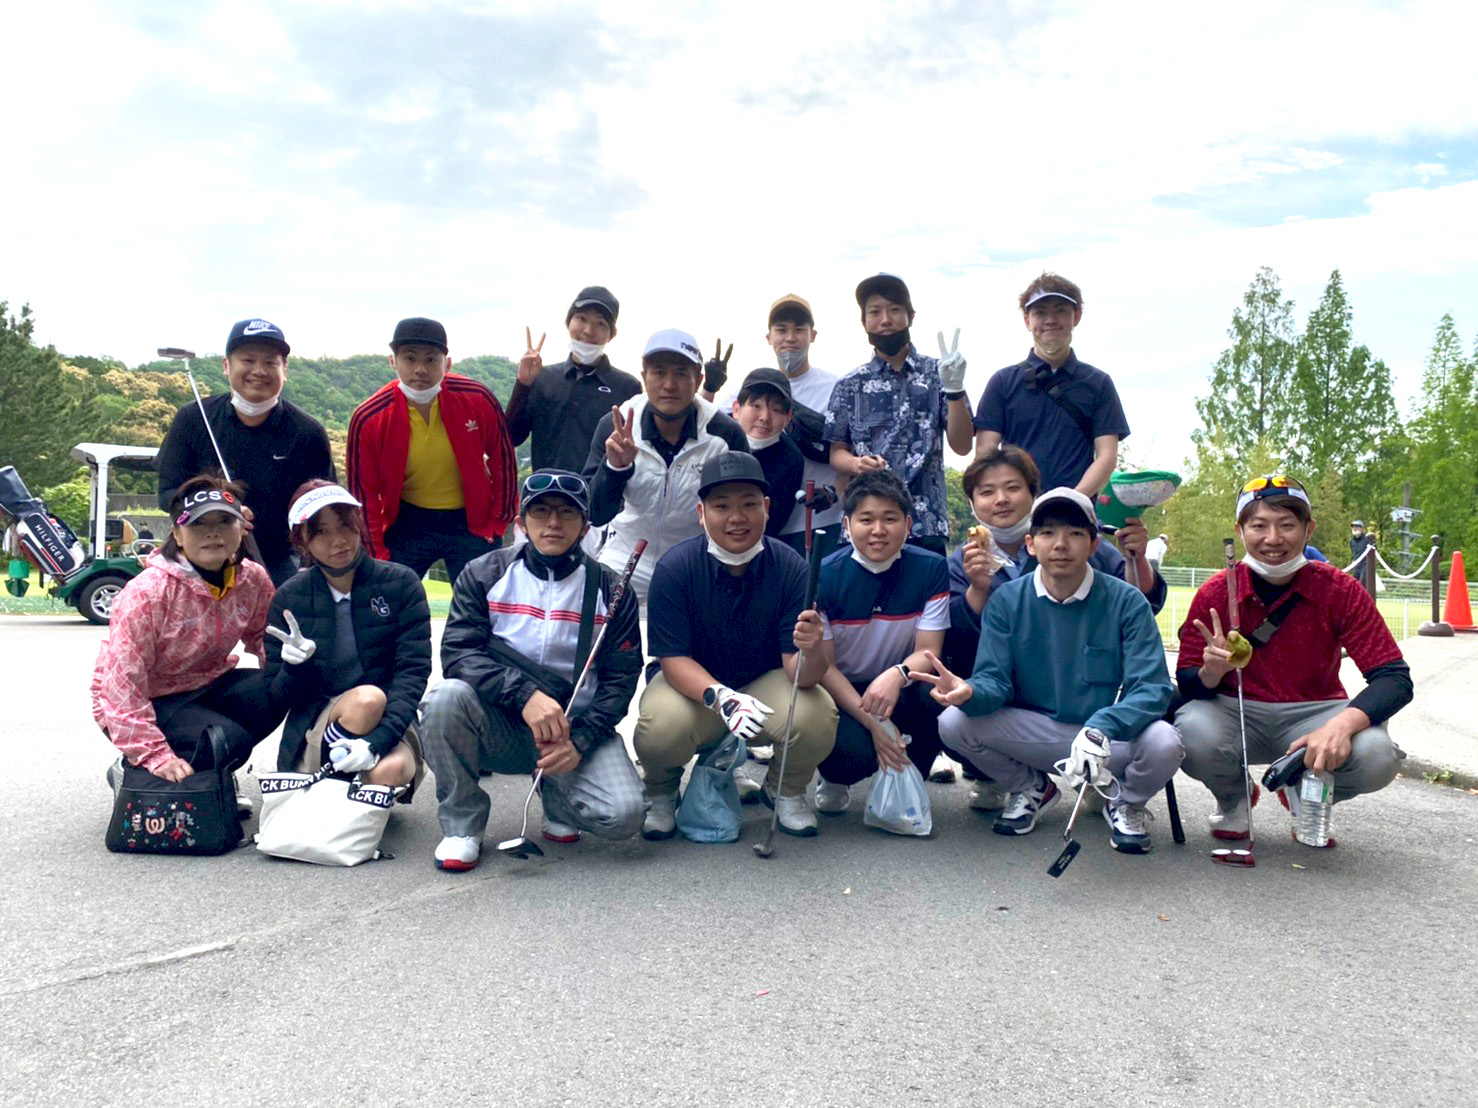 日本セラピーゴルフ部第2回コンペ開催⛳